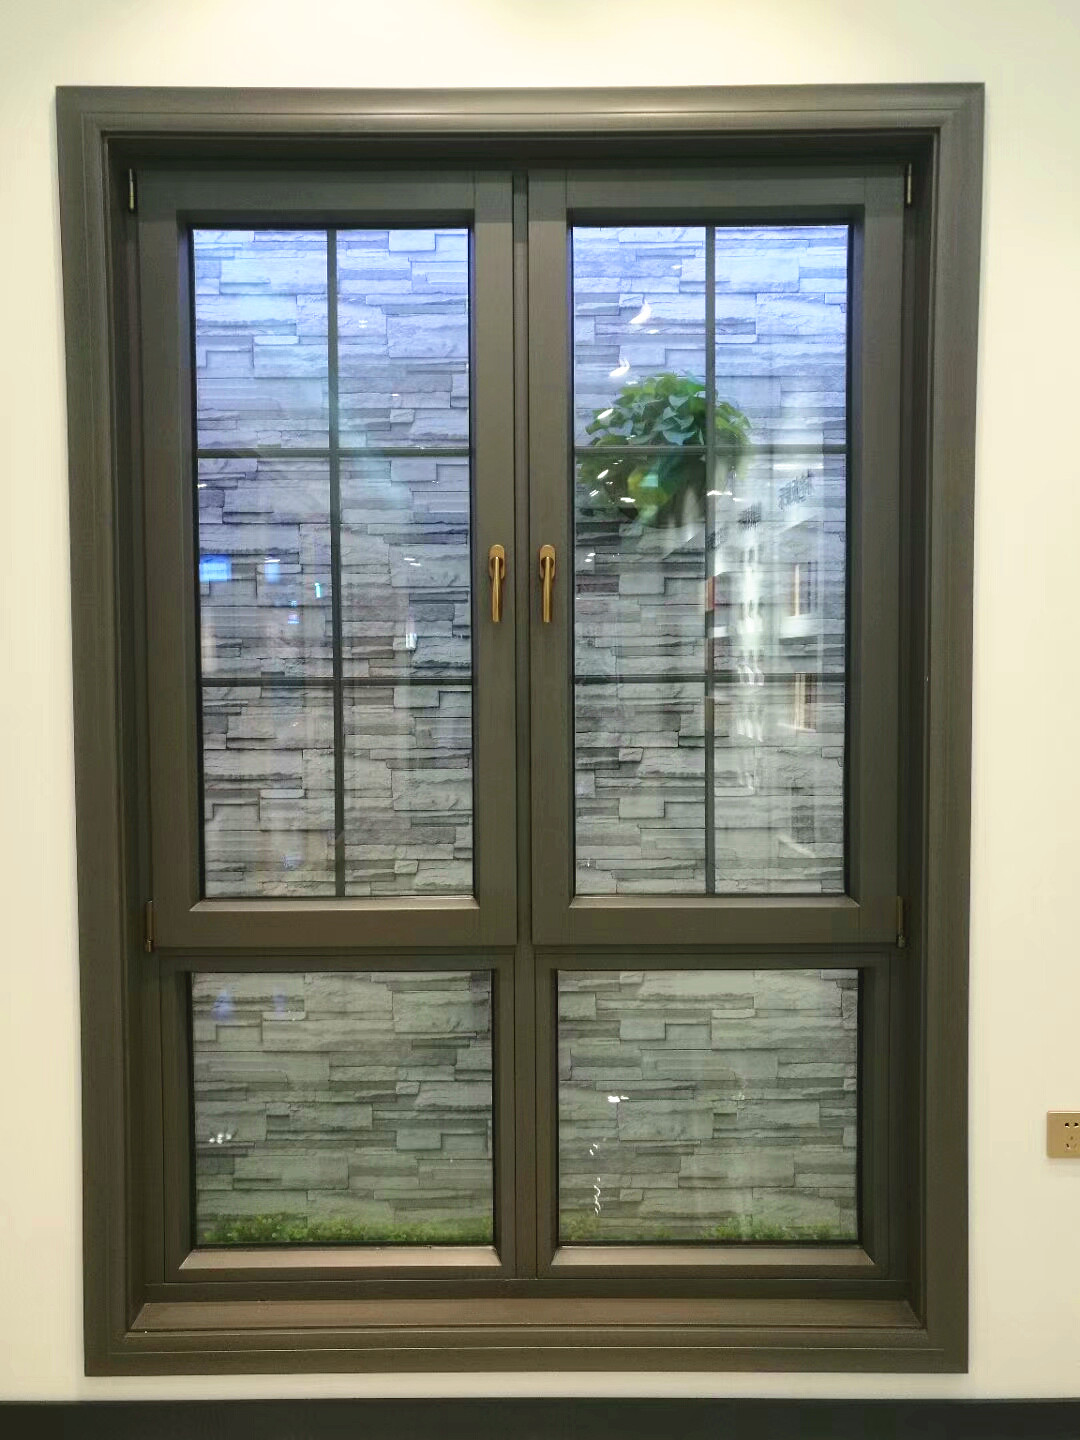 天津铝包木门窗 铝包木门窗品牌 铝包木门窗厂家 铝包木窗价格